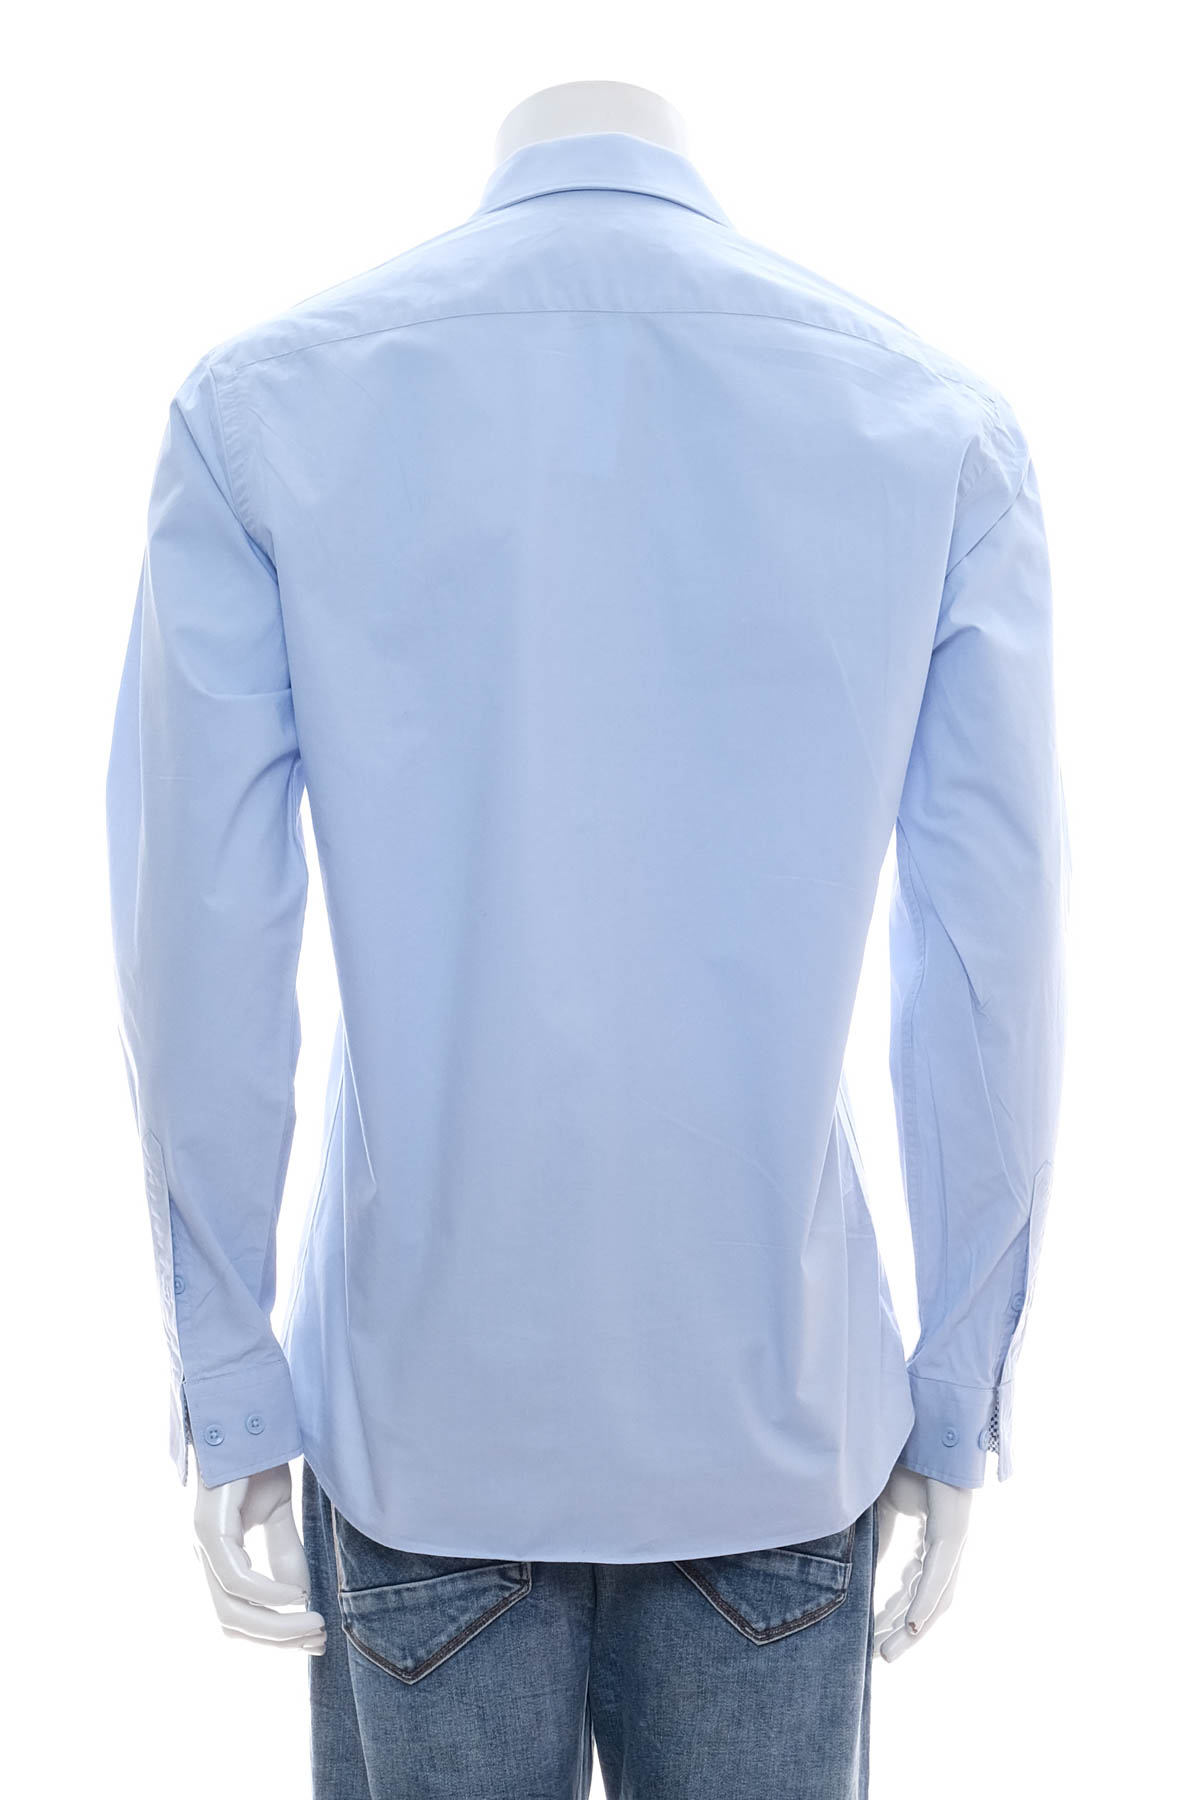 Ανδρικό πουκάμισο - DANSAERT BLACK - 1